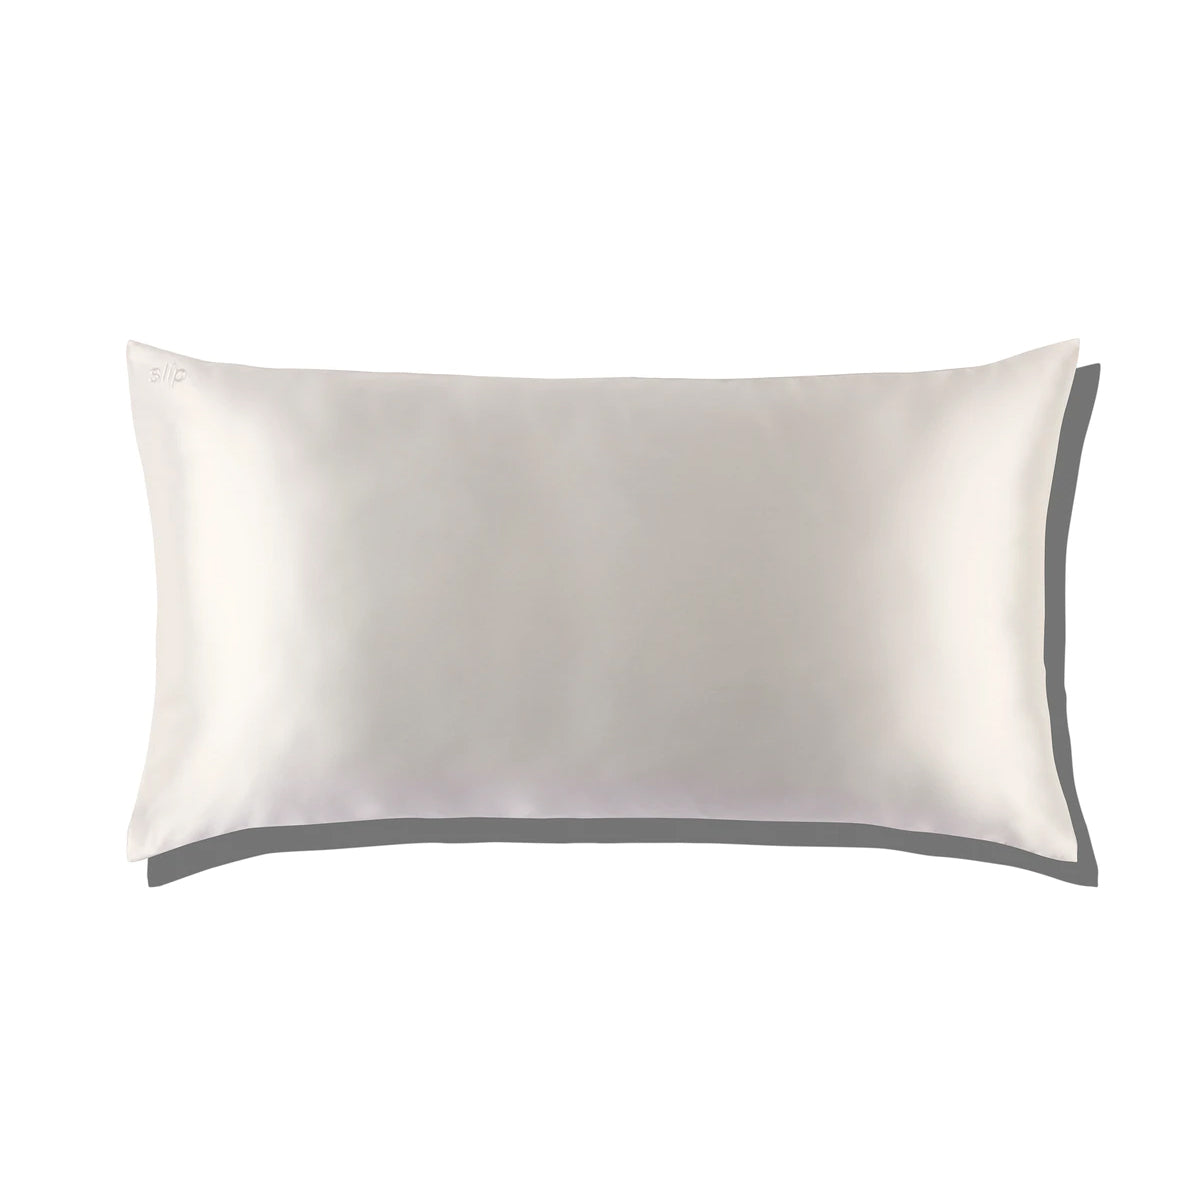 SLIP Silk Pillow Case - King White Zipper